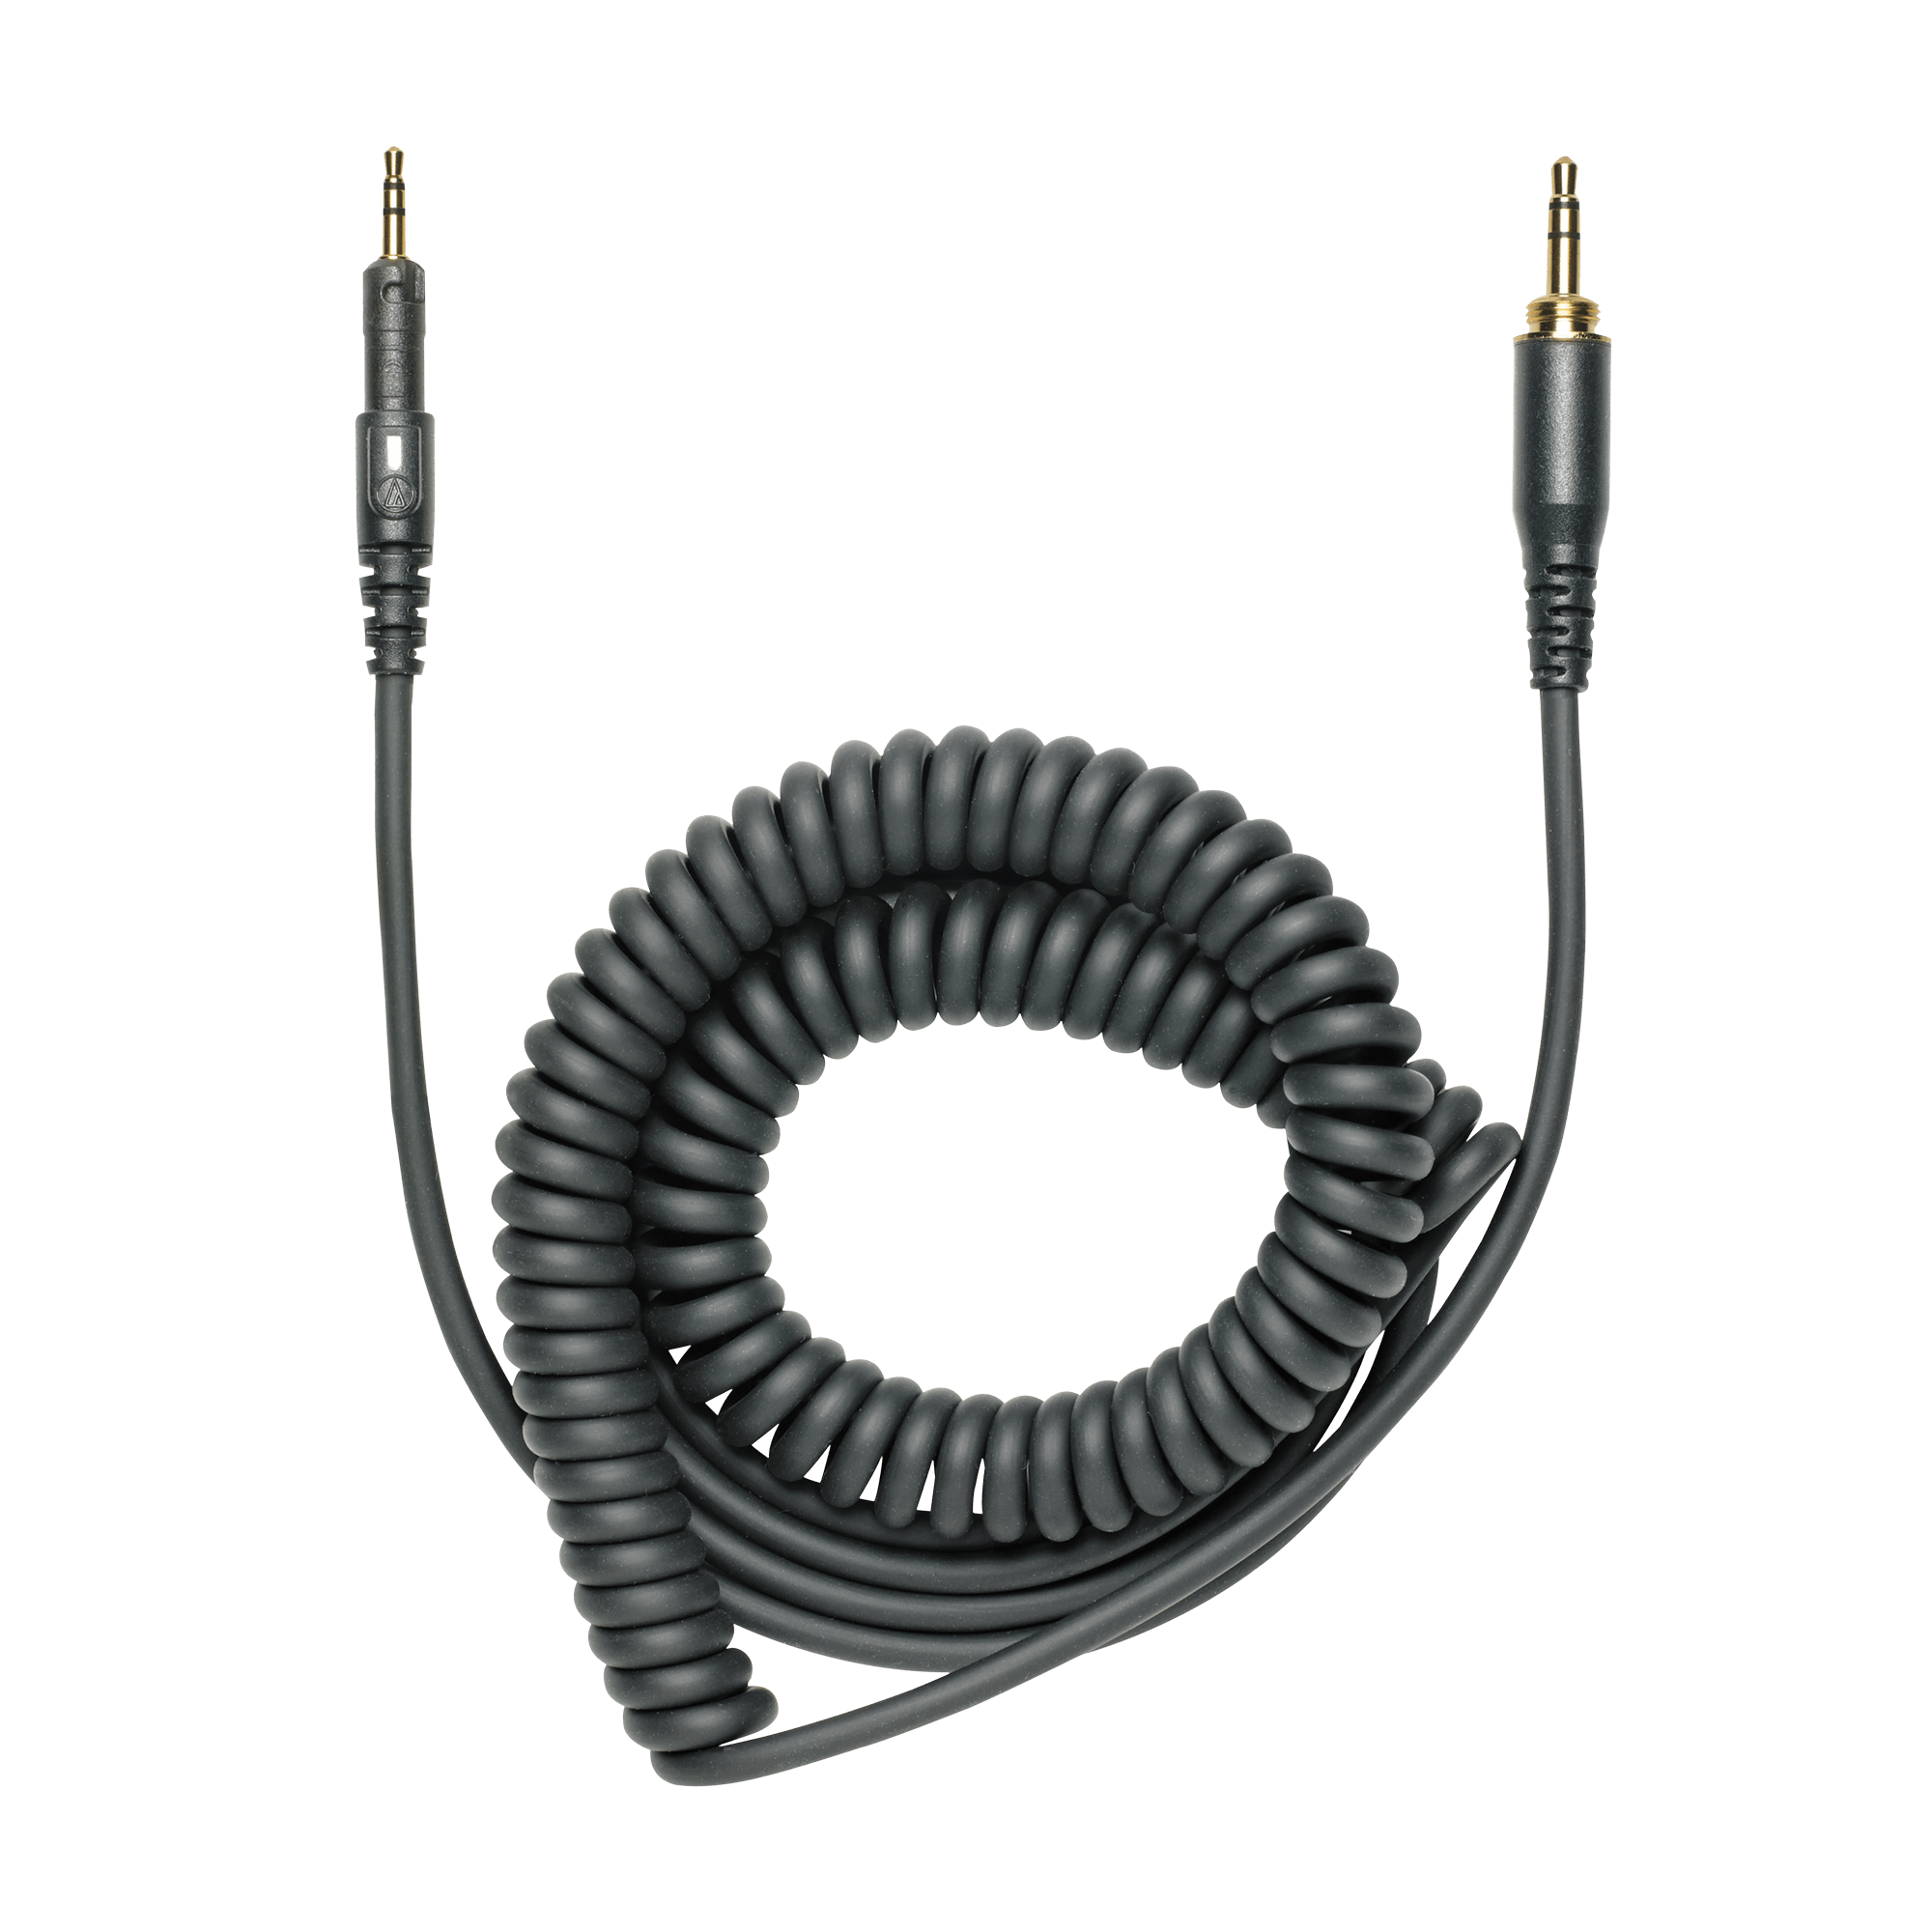 Audio Technica ATH-M50X Over Ear Professional Studio Monitor